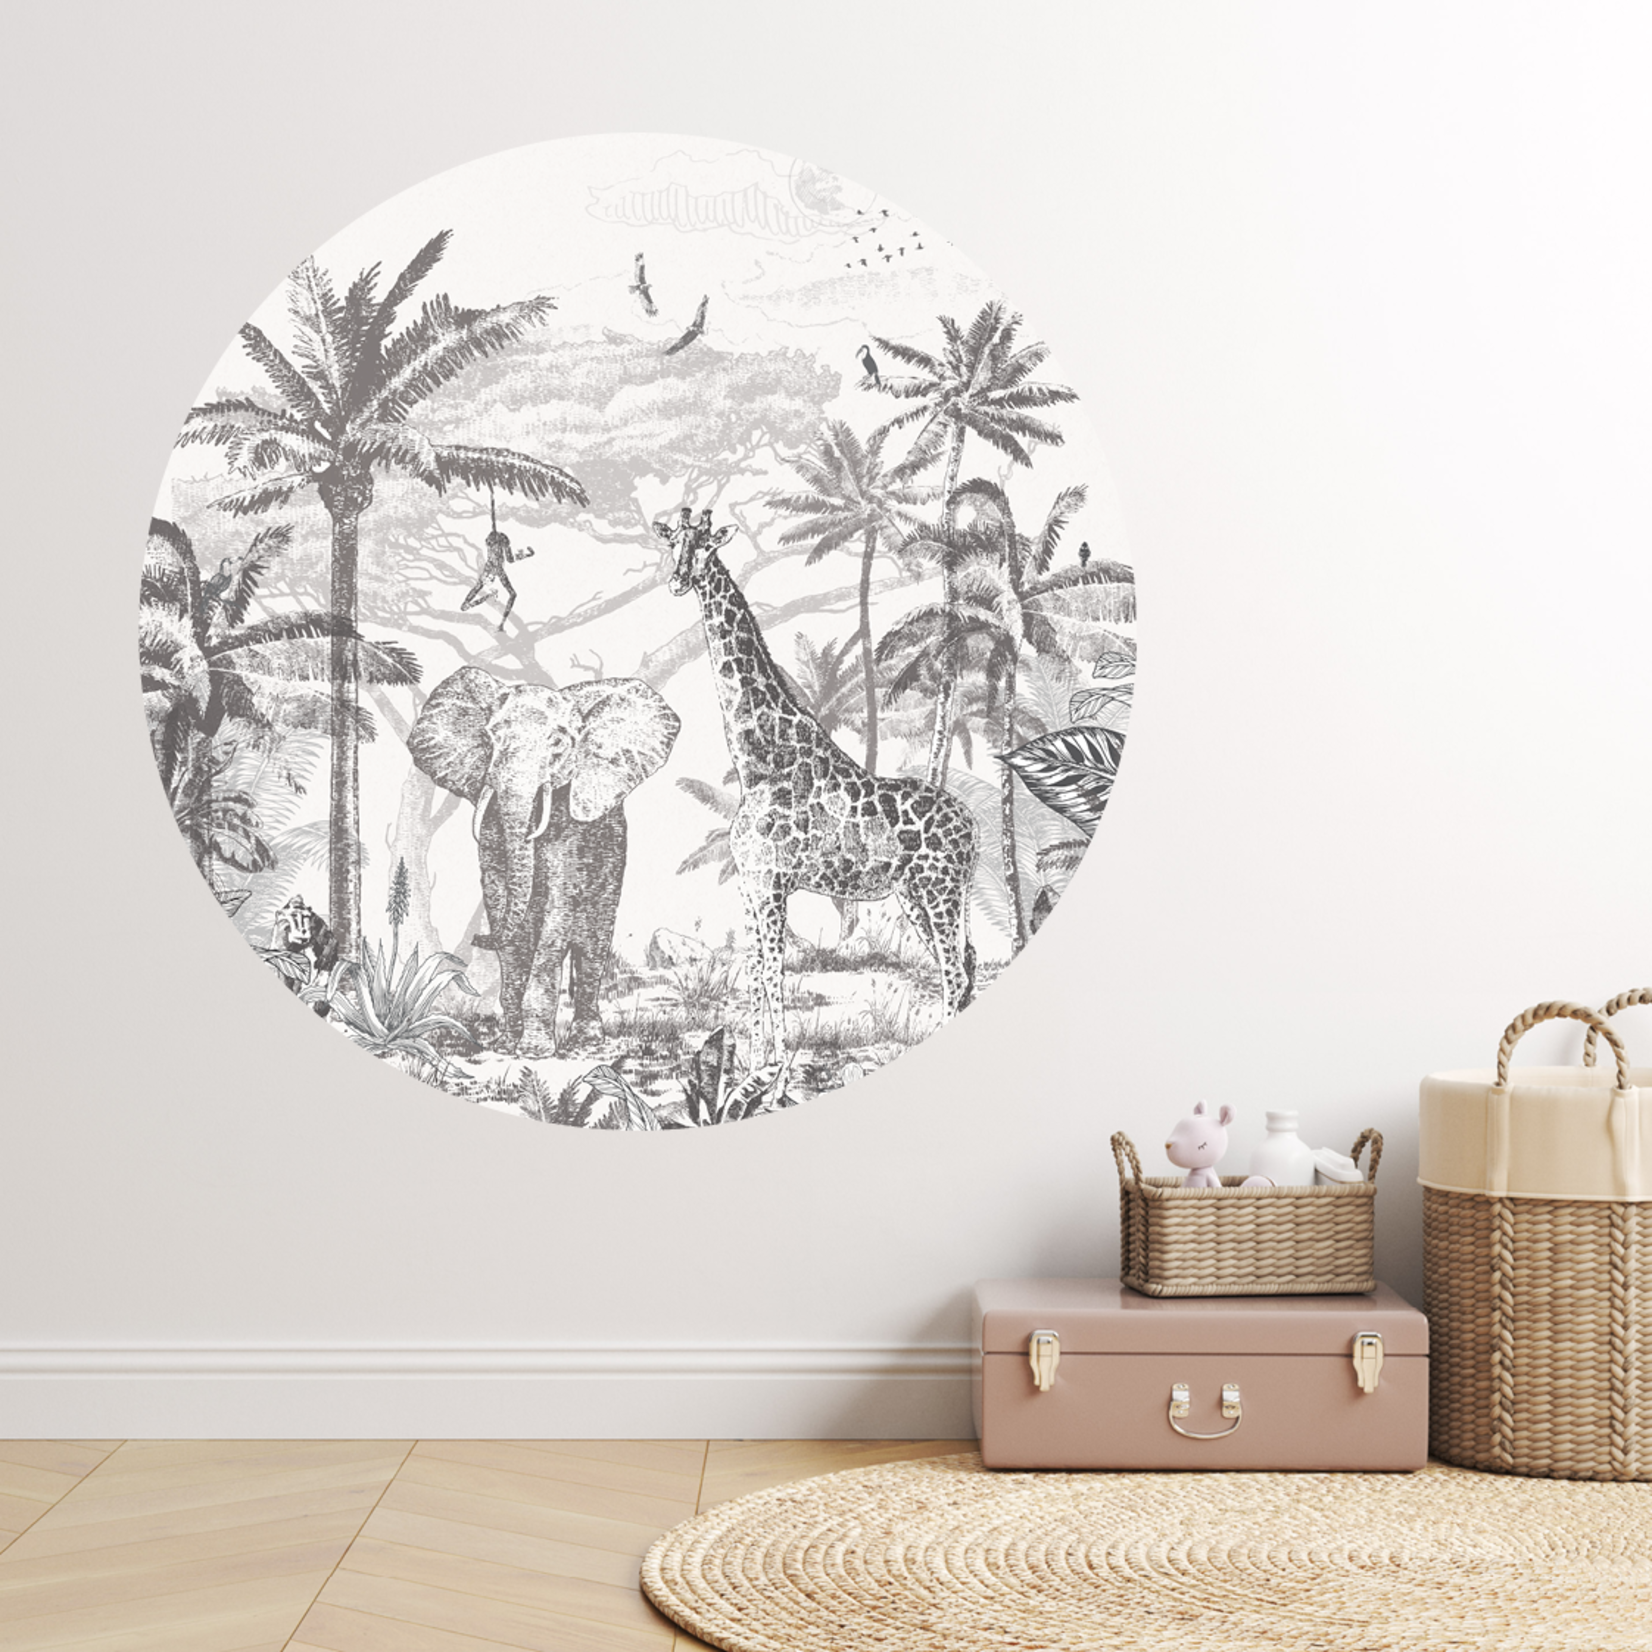 ELLIE Studio Zelfklevende behangcirkel met Jungle thema | zwart wit